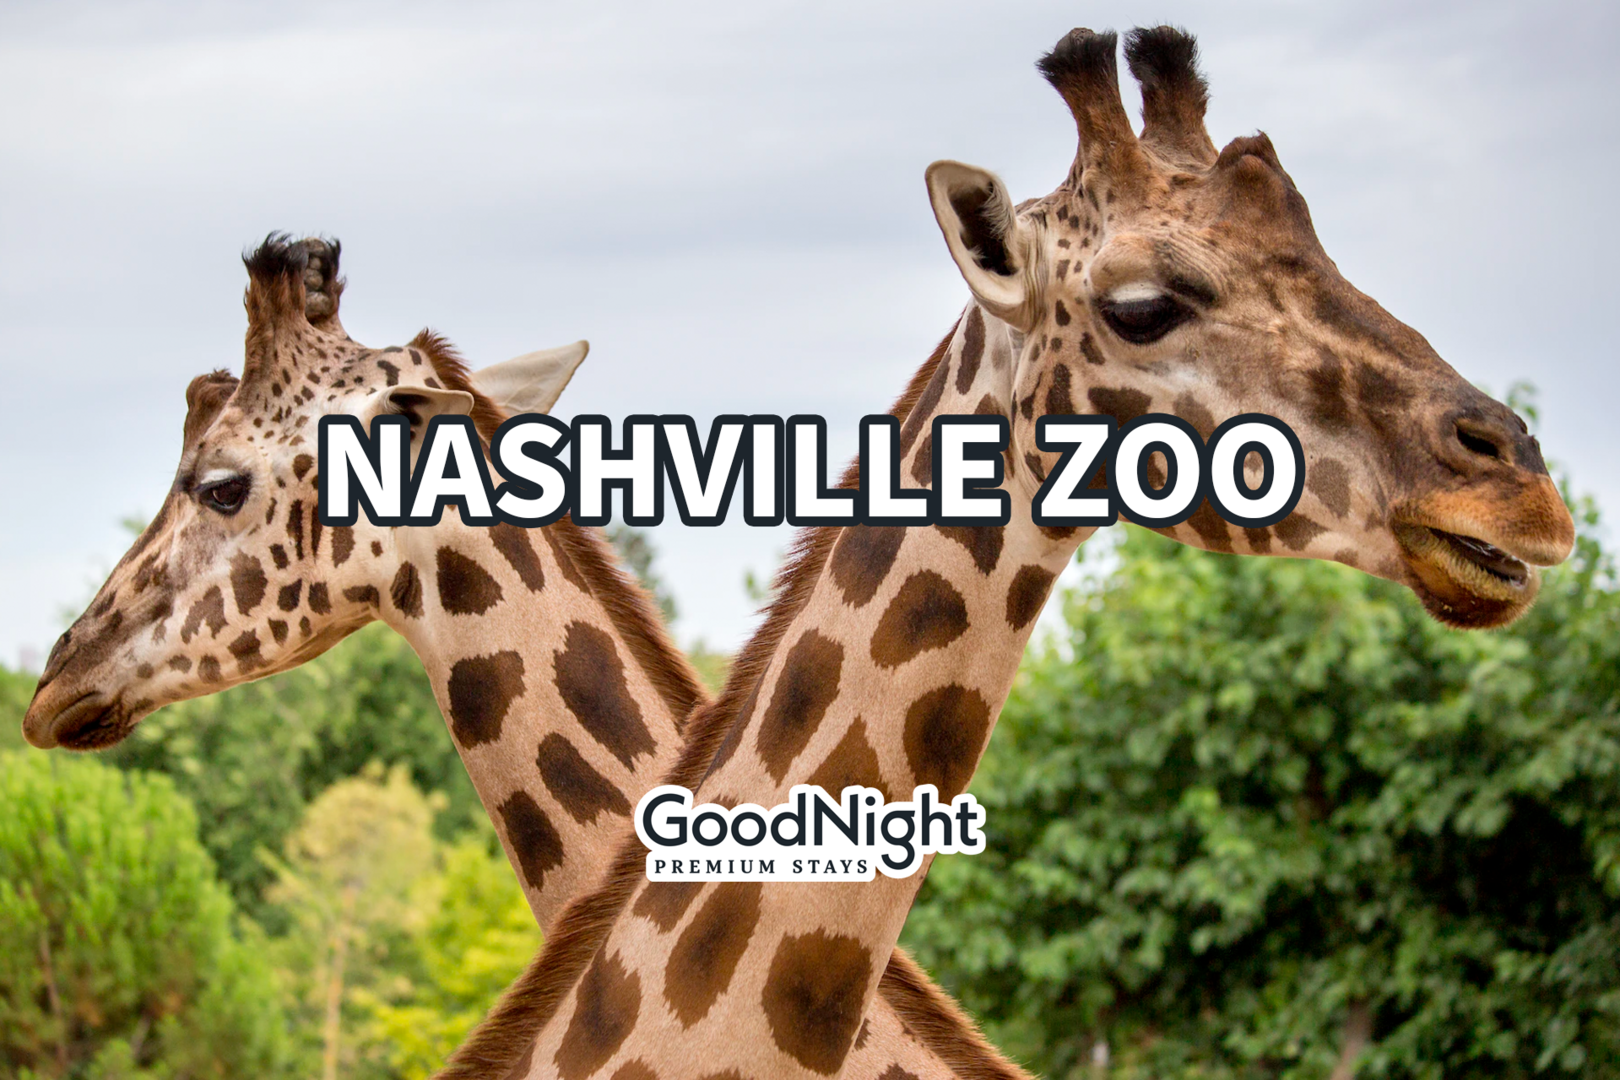 14 mins: Nashville Zoo